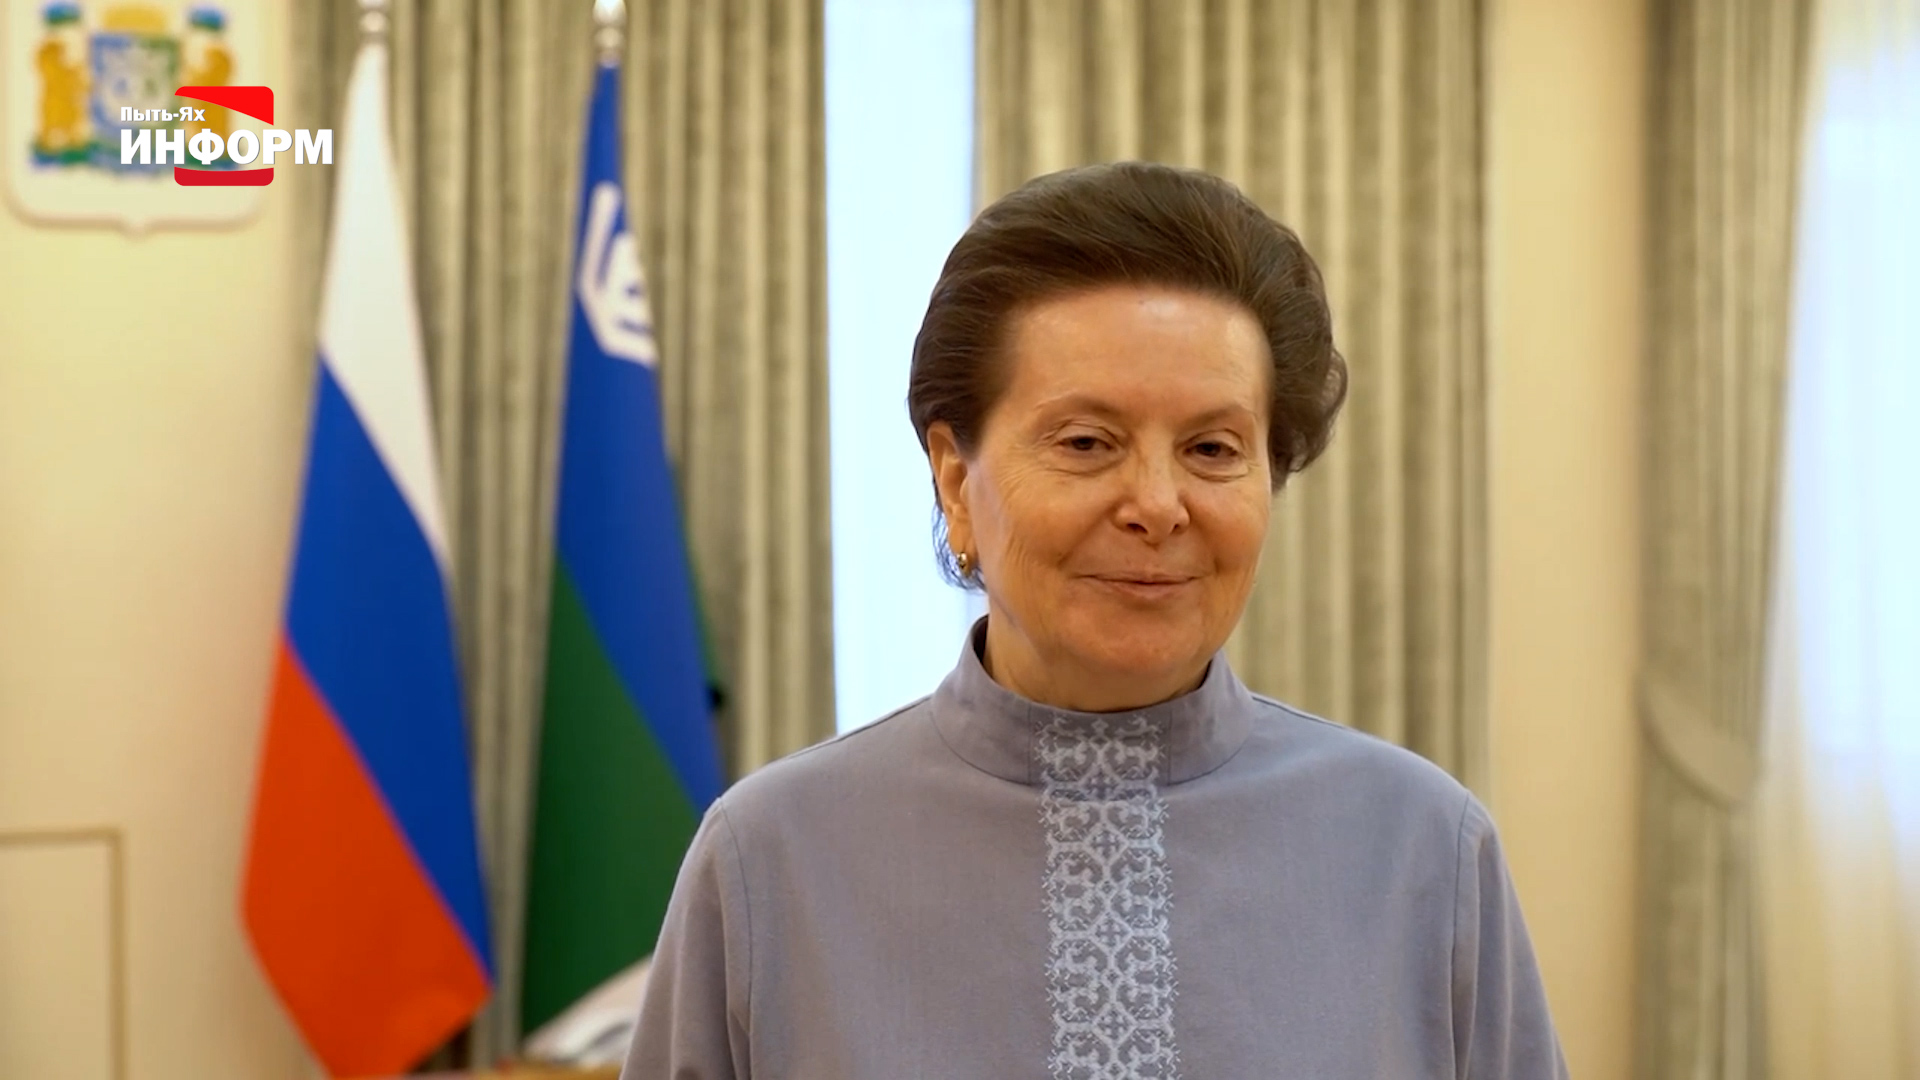 Глава региона Наталья Комарова досрочно сложила полномочия